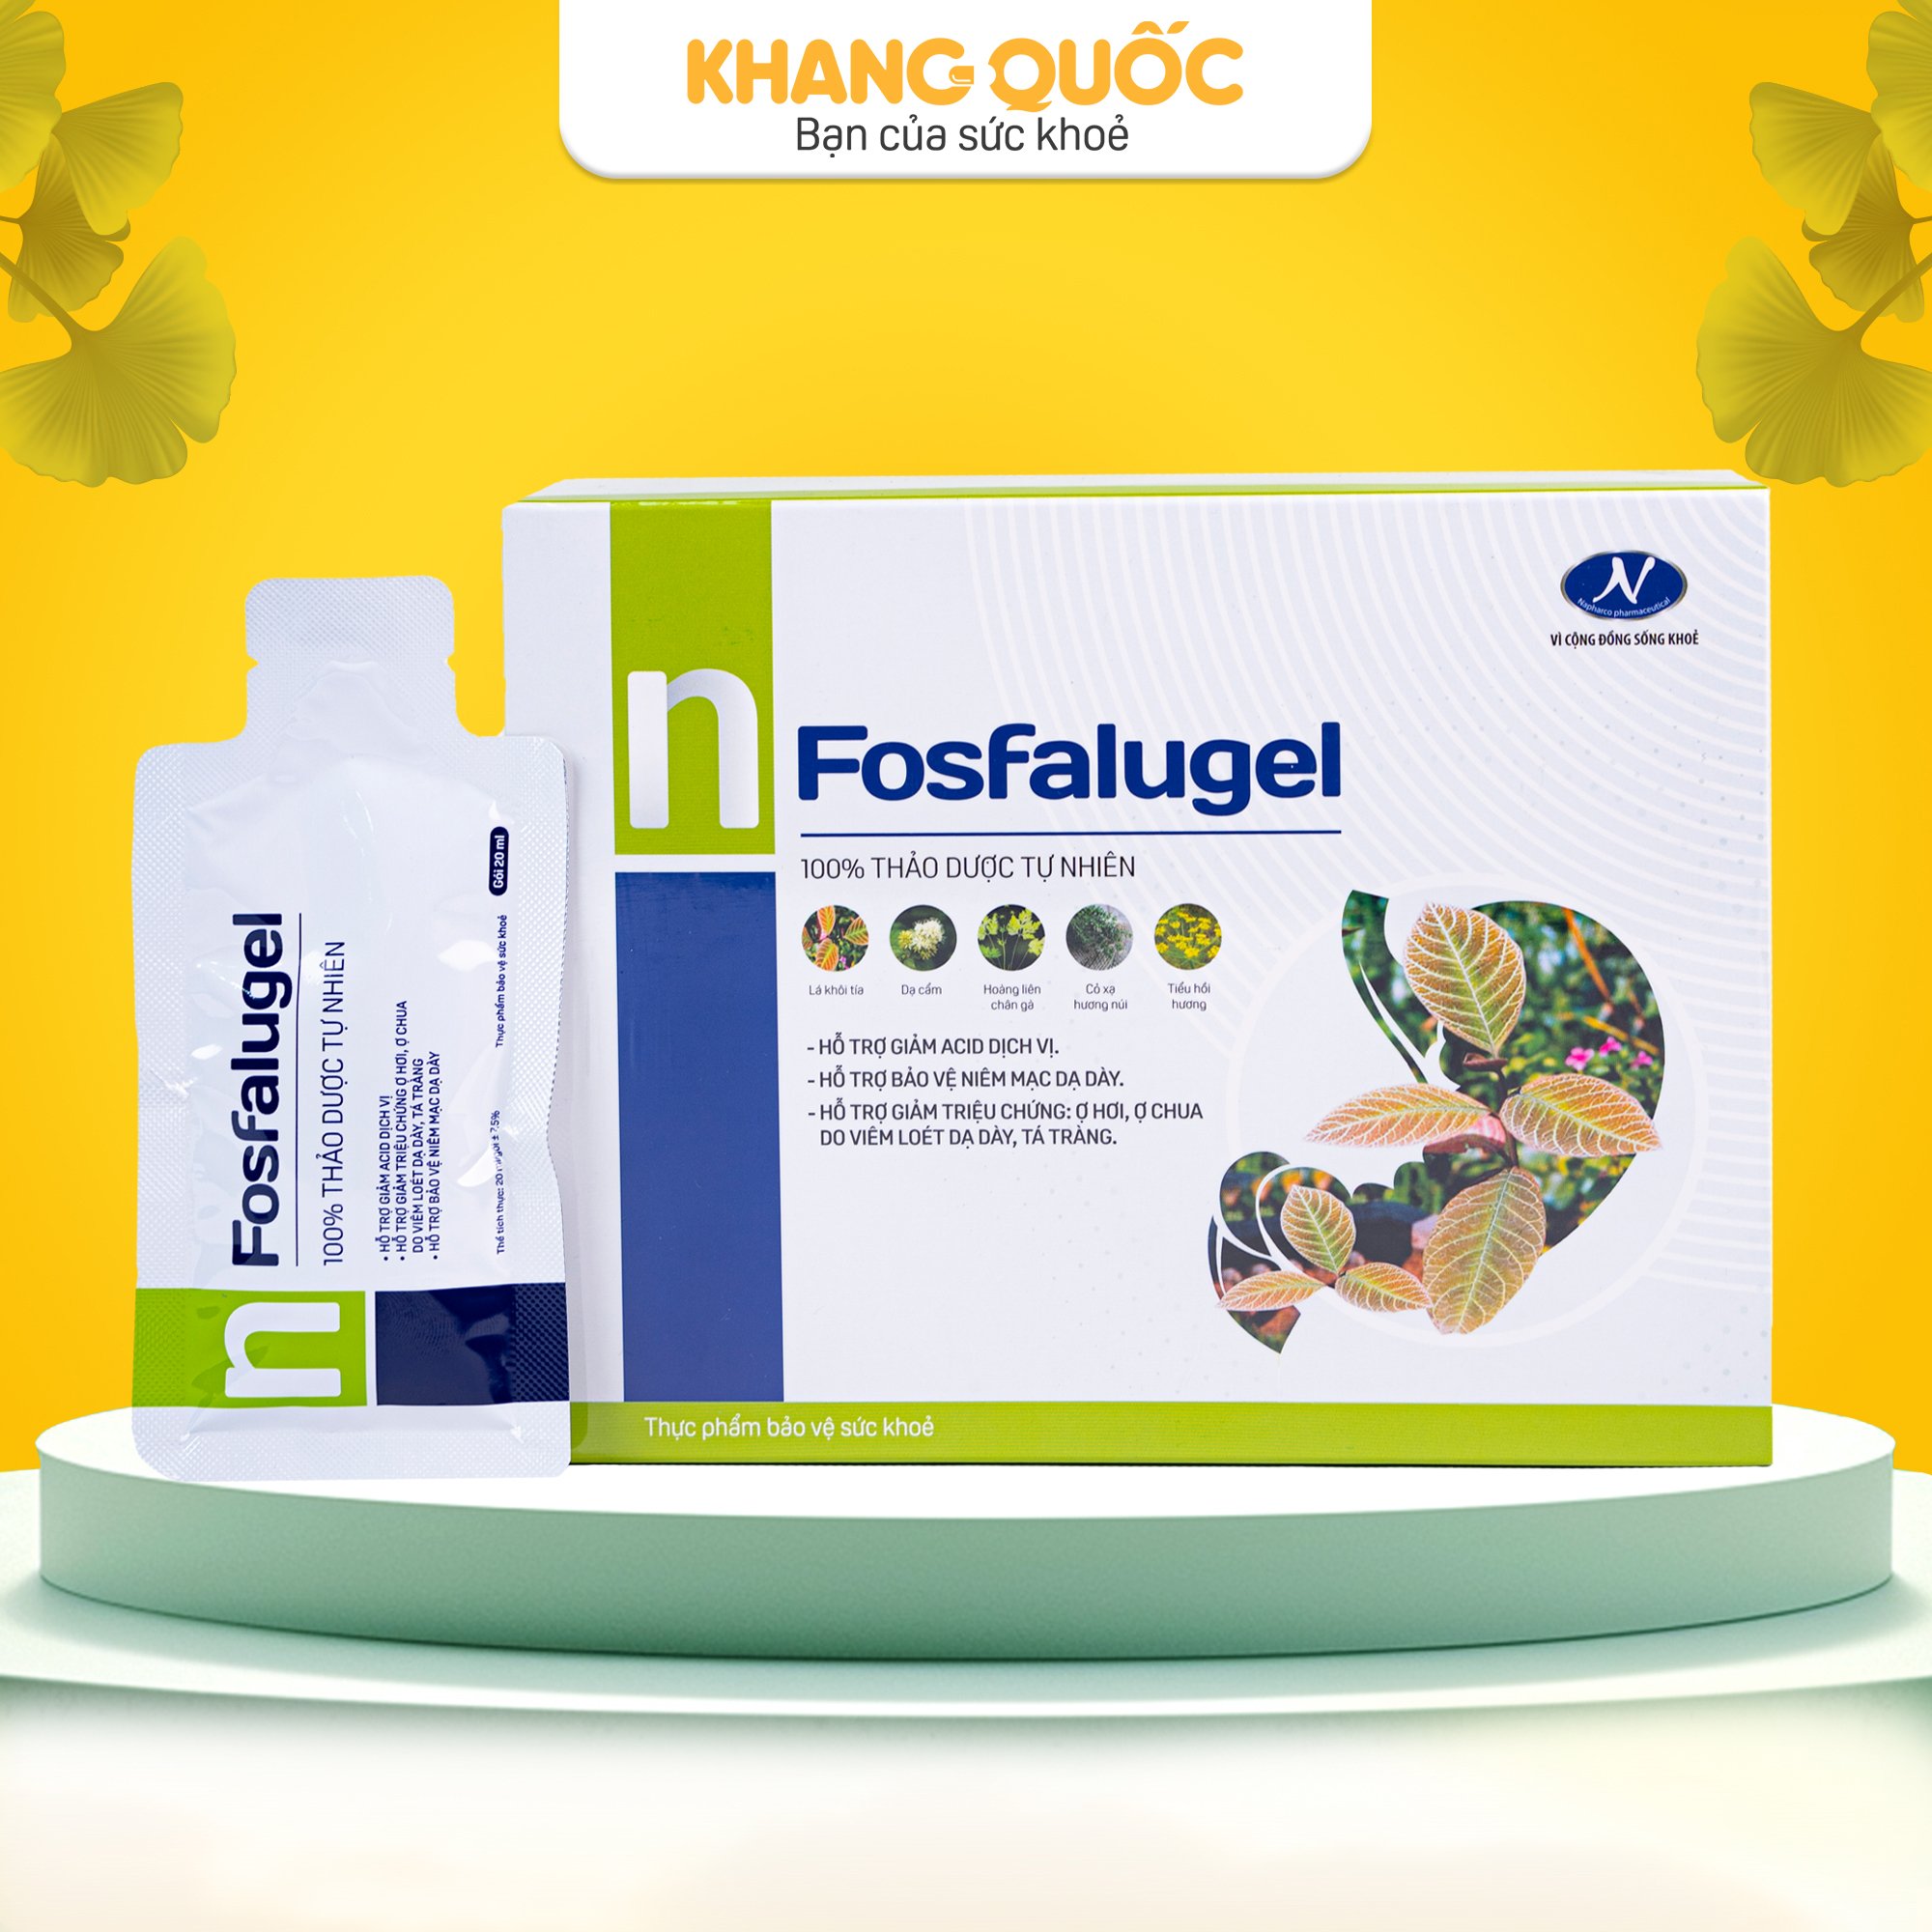 Fosfalugel hỗ trợ giảm đau dạ dày hiệu quả